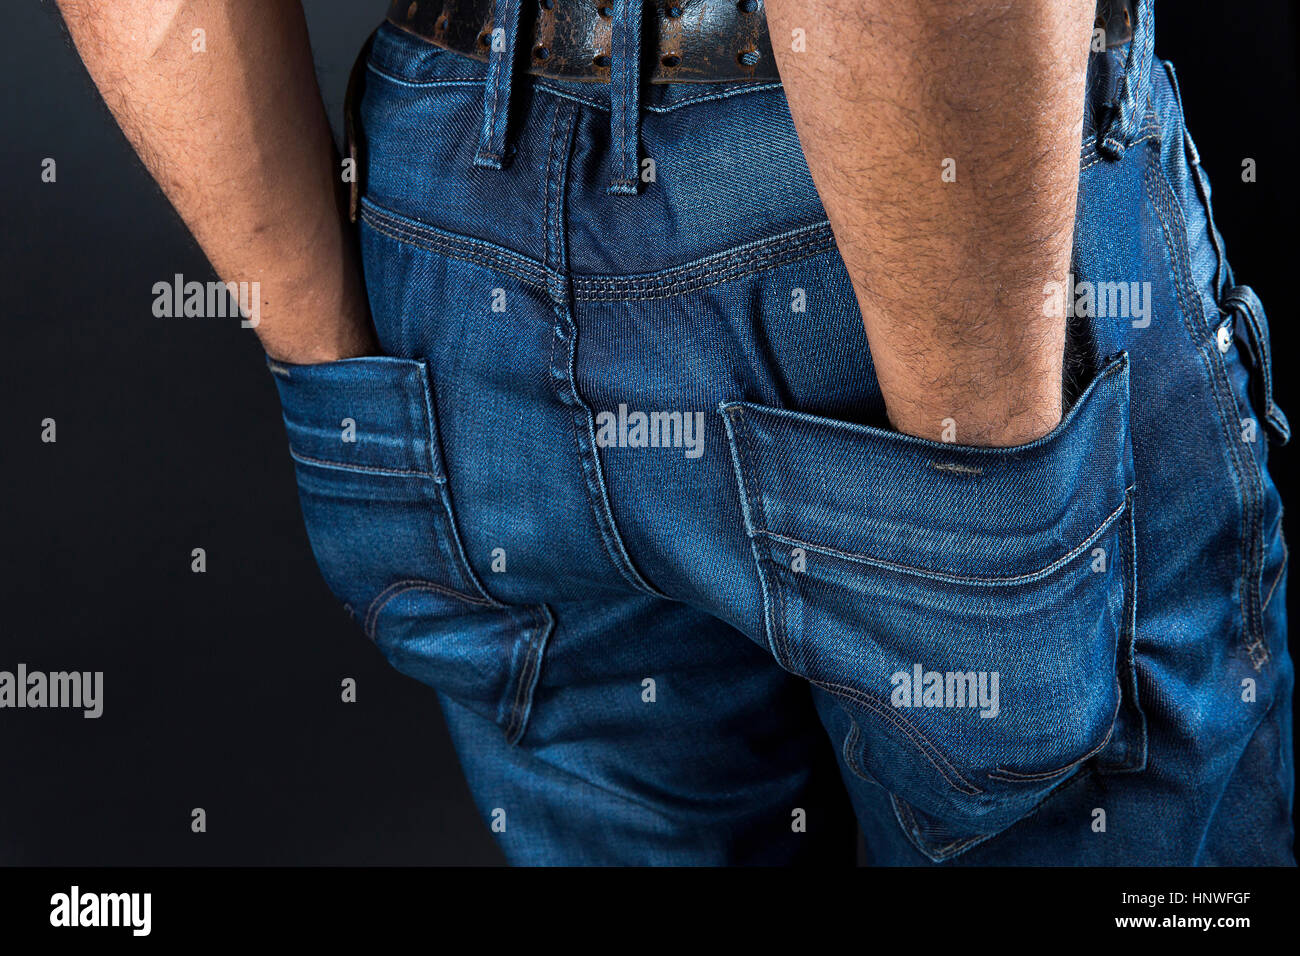 Jeans pockets. Stock Photo